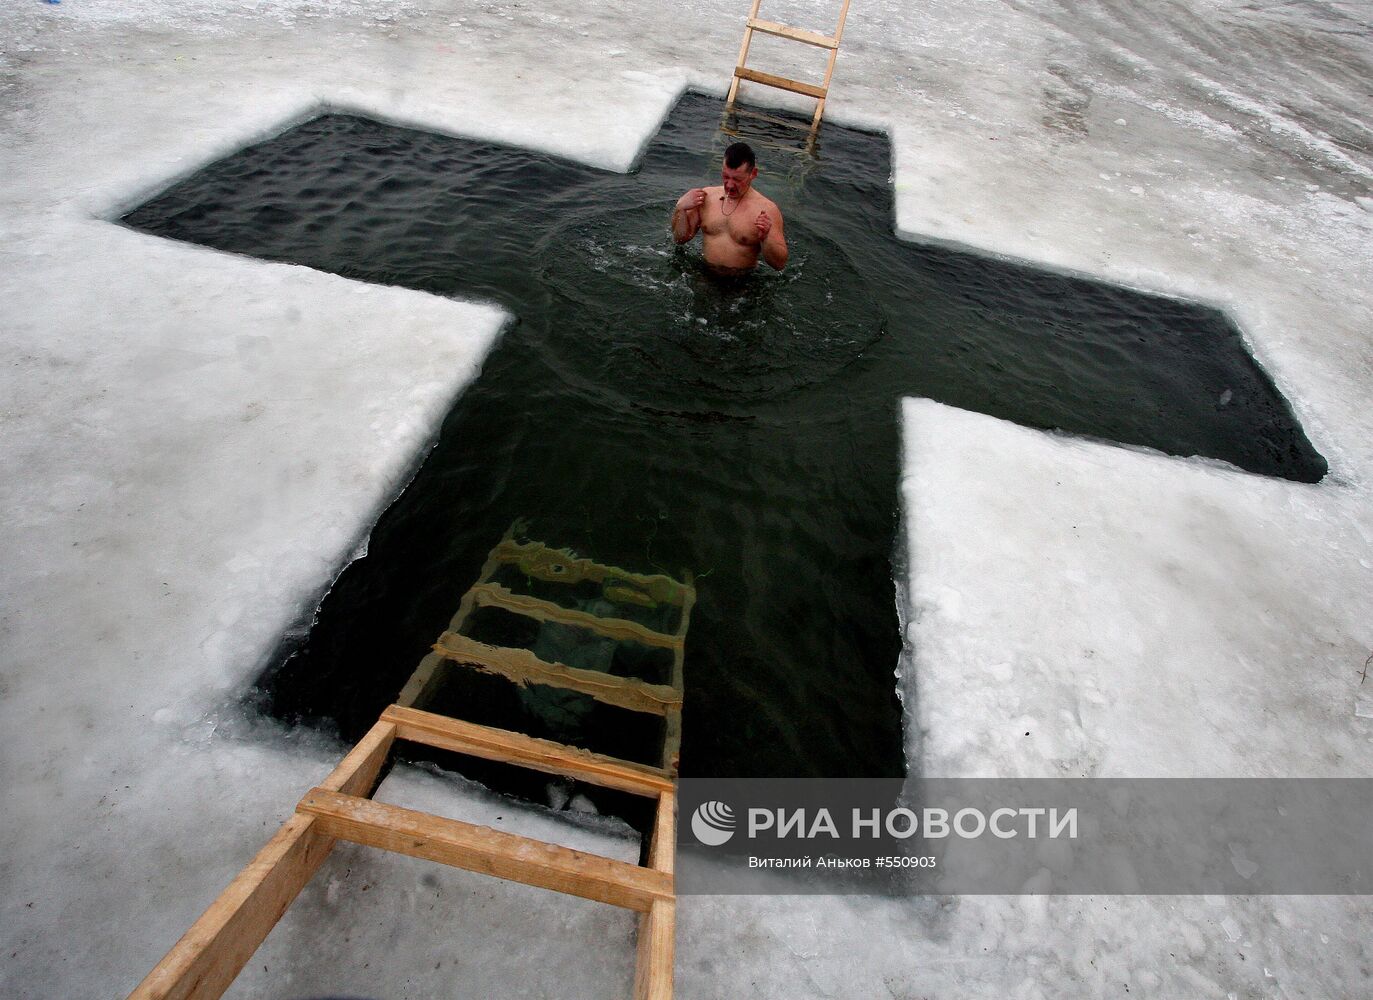 Крещенские купания во Владивостоке